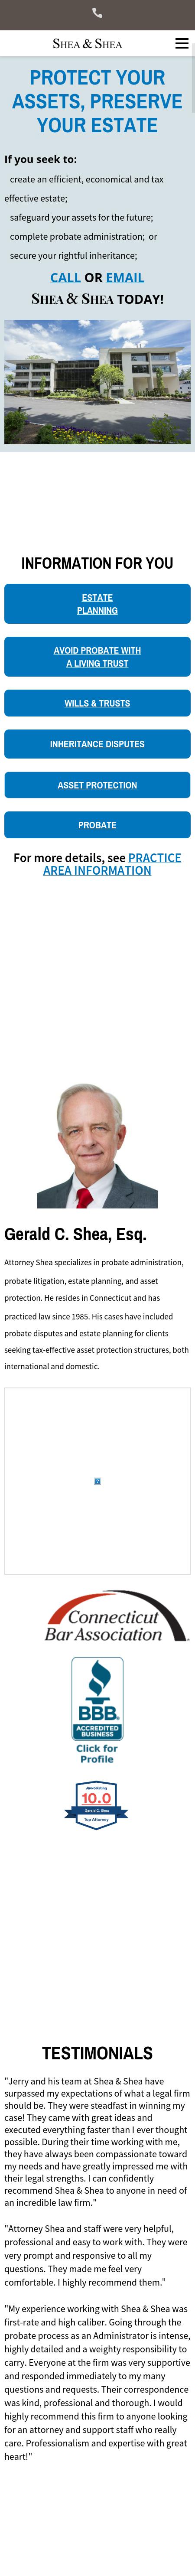 Shea & Shea - Westport CT Lawyers